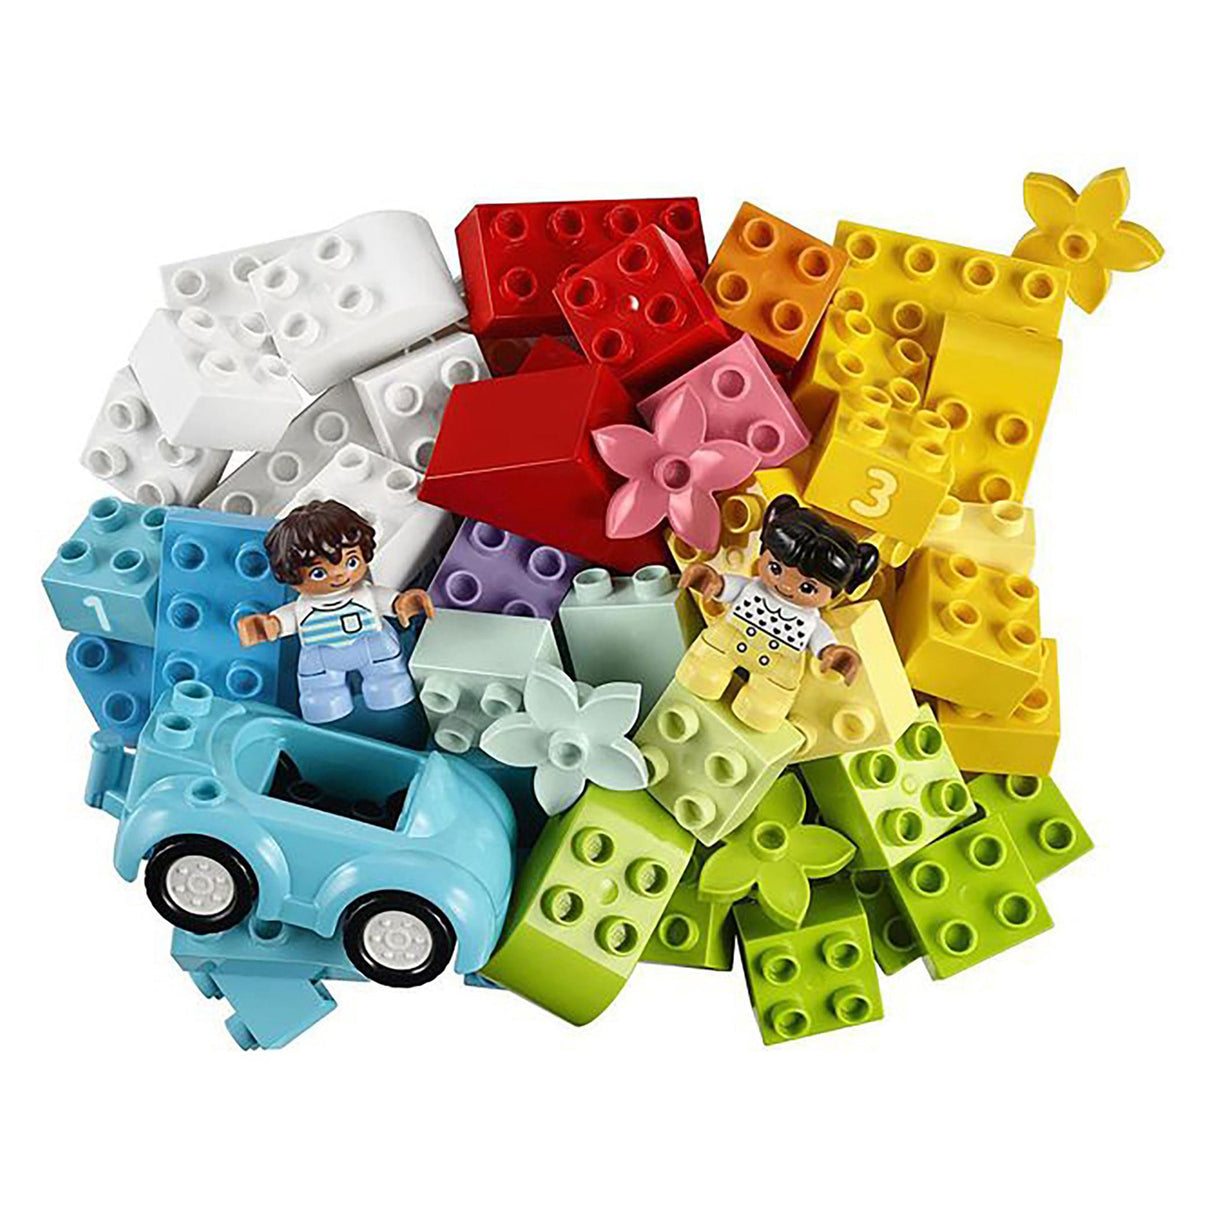 LEGO 10913 DUPLO Brick Box (65 pieces)